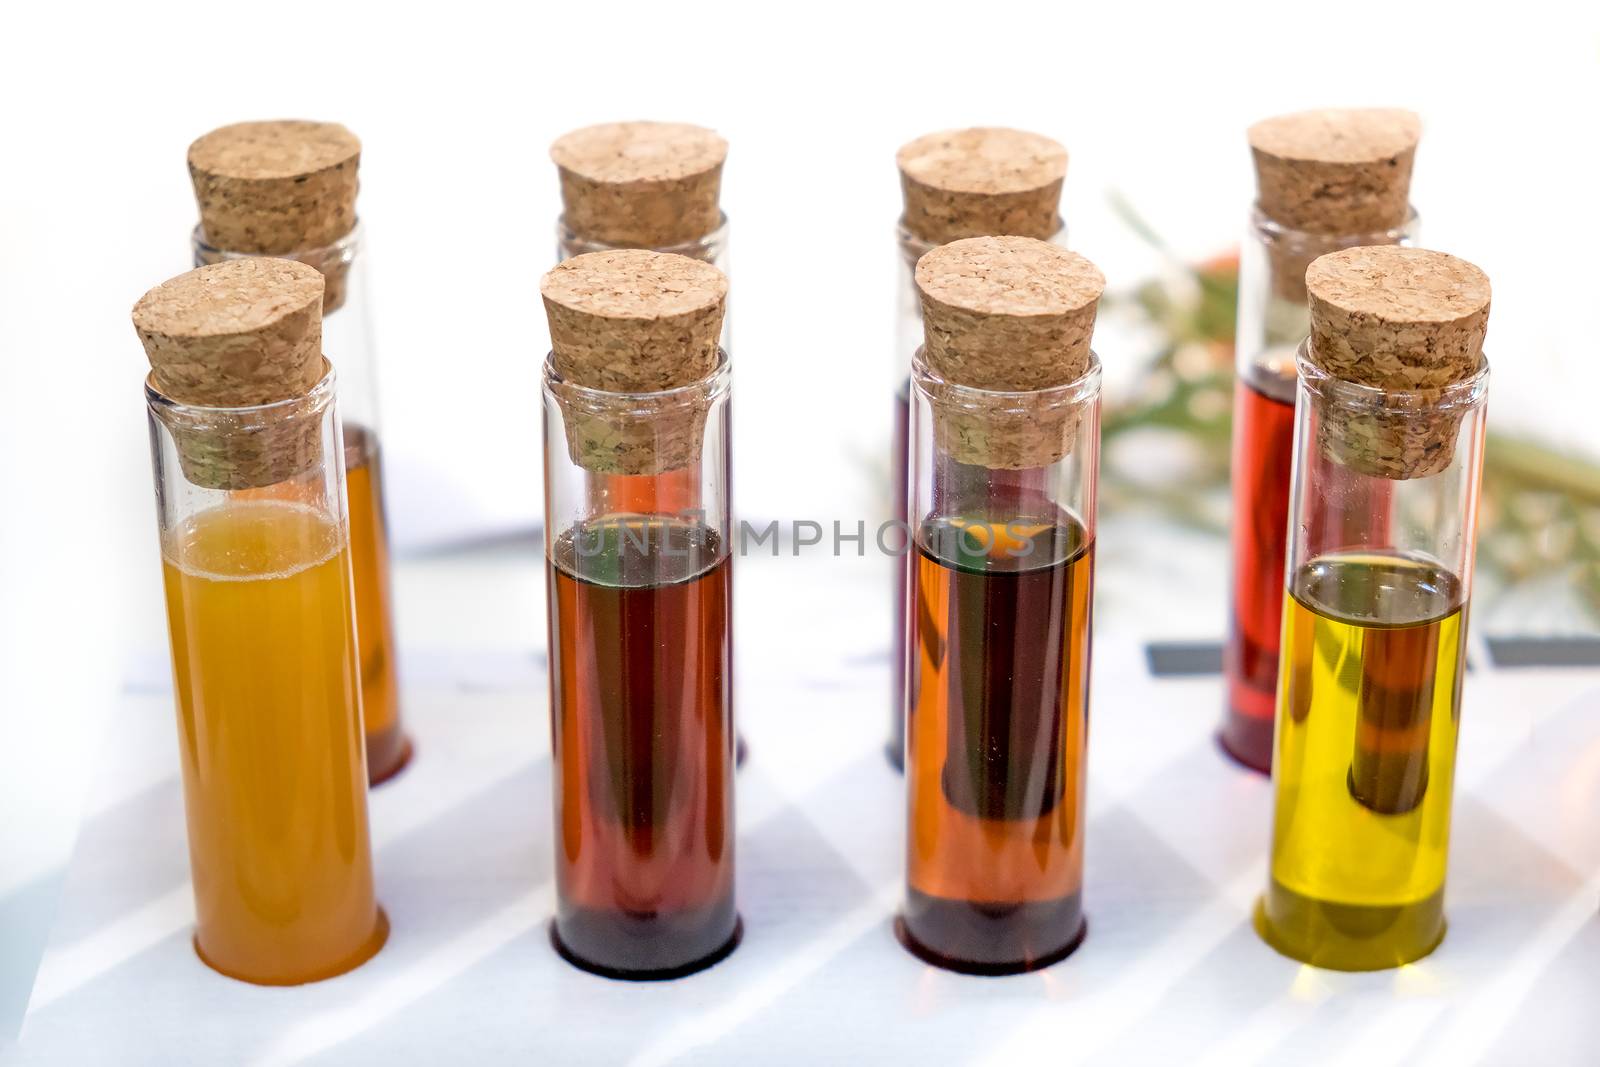 oil specimen liquid test tube urine samples vials